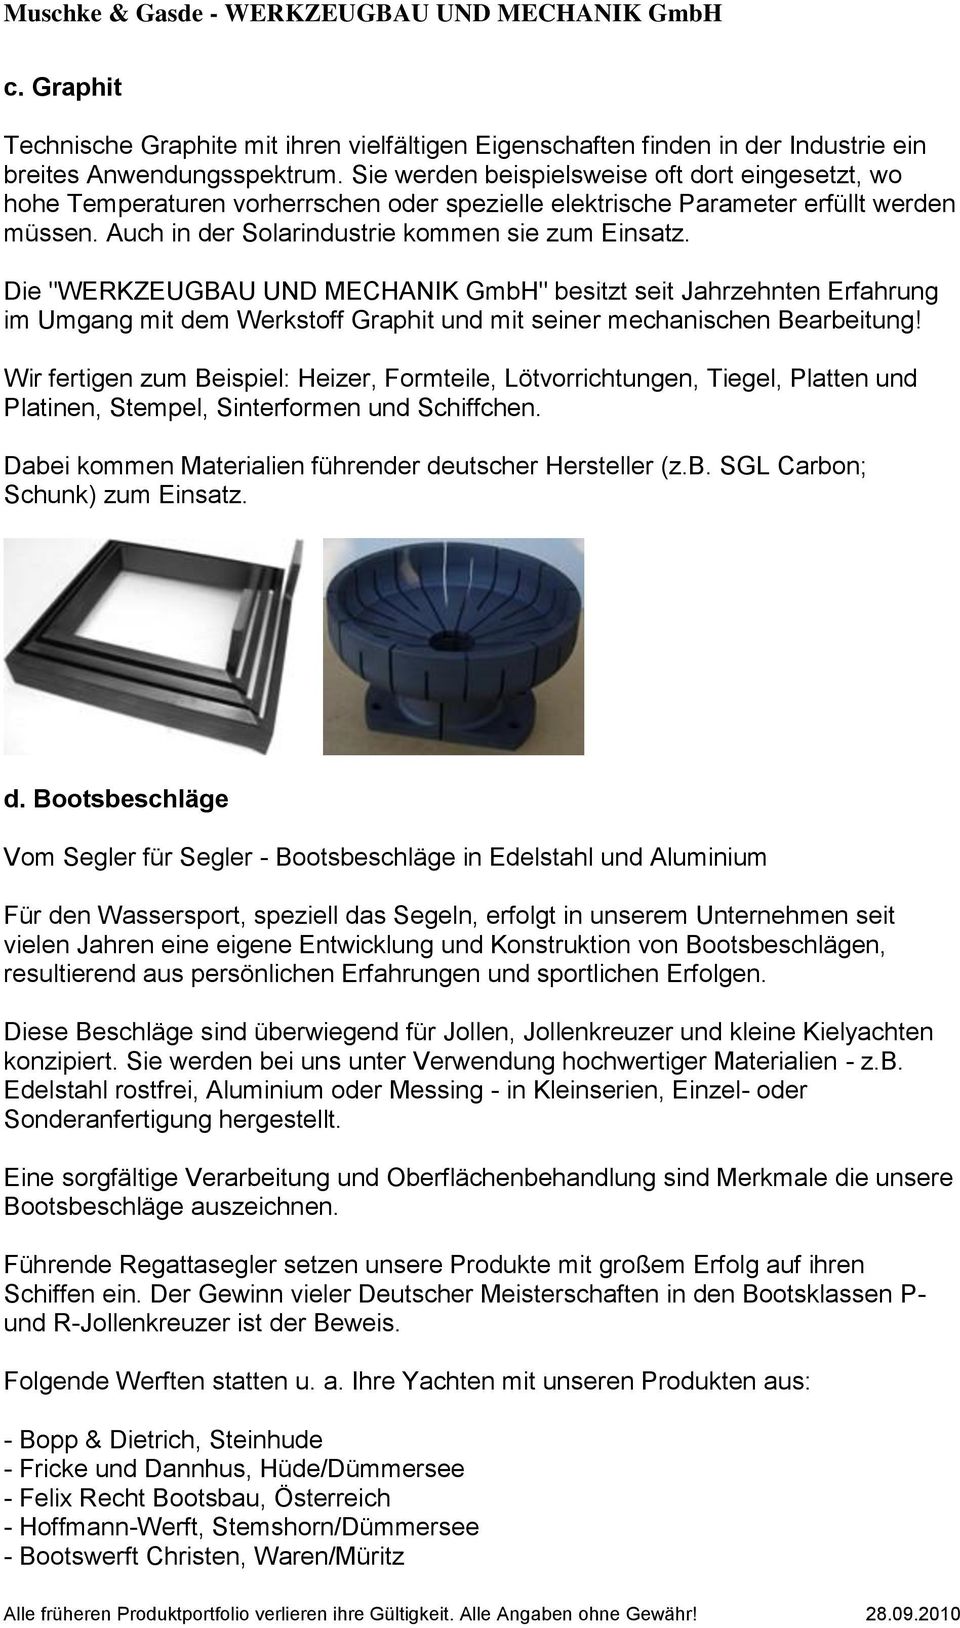 Die "WERKZEUGBAU UND MECHANIK GmbH" besitzt seit Jahrzehnten Erfahrung im Umgang mit dem Werkstoff Graphit und mit seiner mechanischen Bearbeitung!